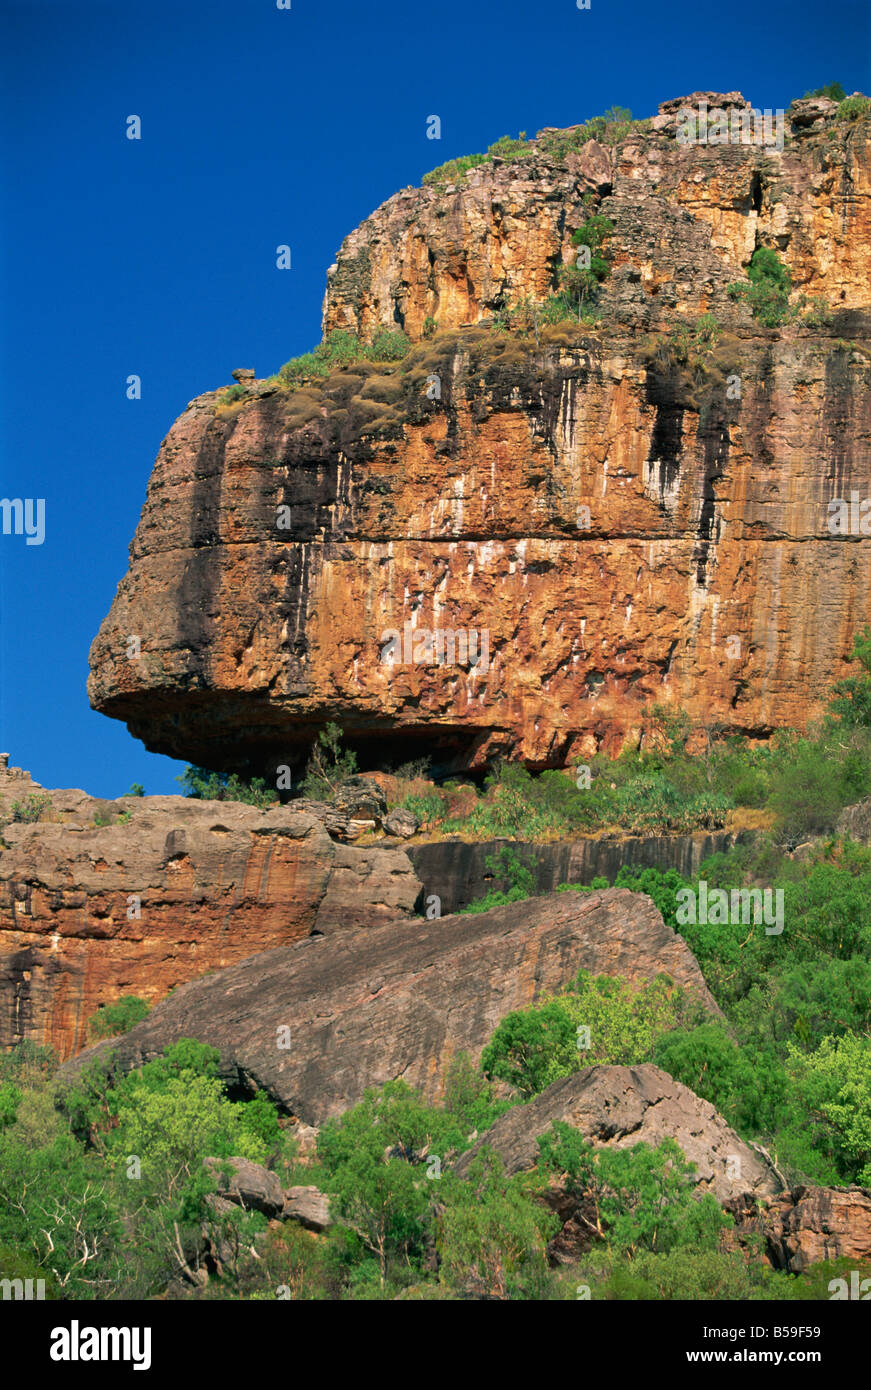 Nourlangie Rock, sacro rifugio aborigena e di arte rupestre sito, il Parco Nazionale Kakadu, Territorio del Nord, l'Australia, il Pacifico Foto Stock